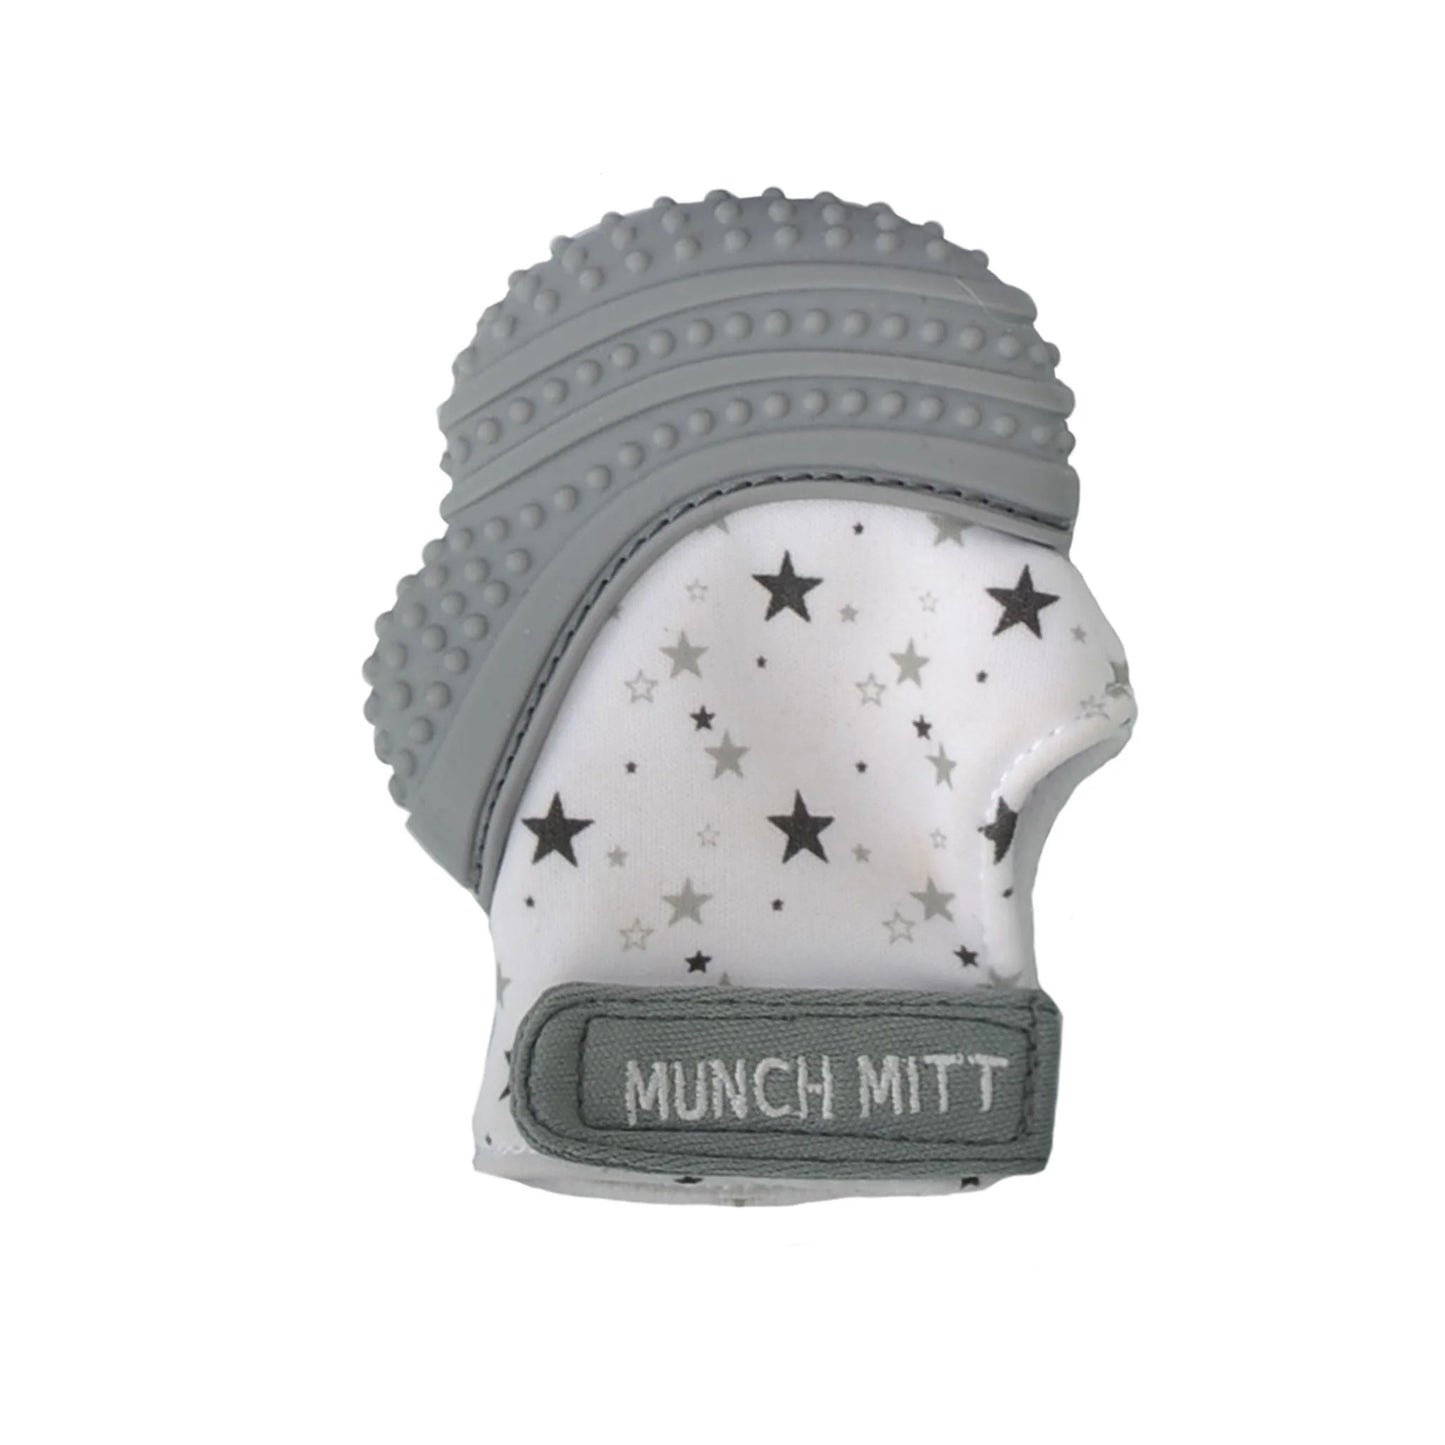 Munch Mini + Mitt Combo - Grey